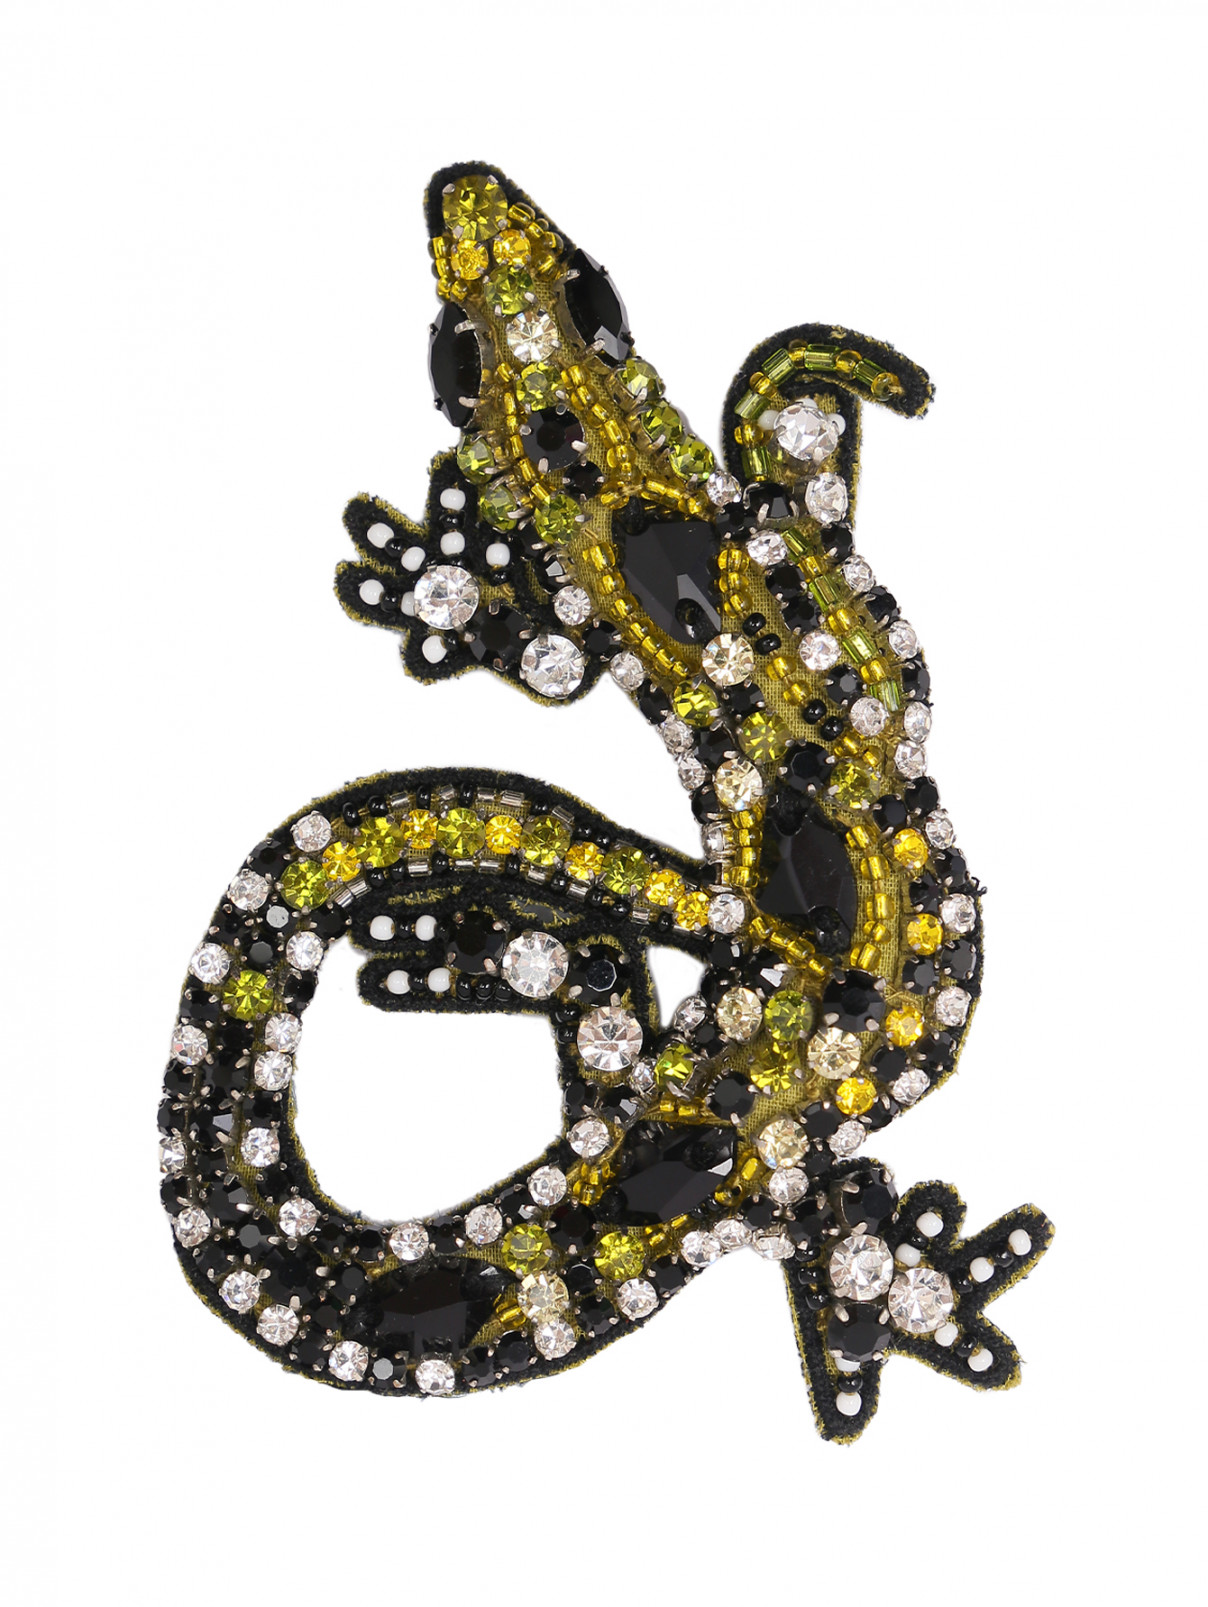 Брошь из текстиля декорированная стразами Max Mara  –  Общий вид  – Цвет:  Зеленый